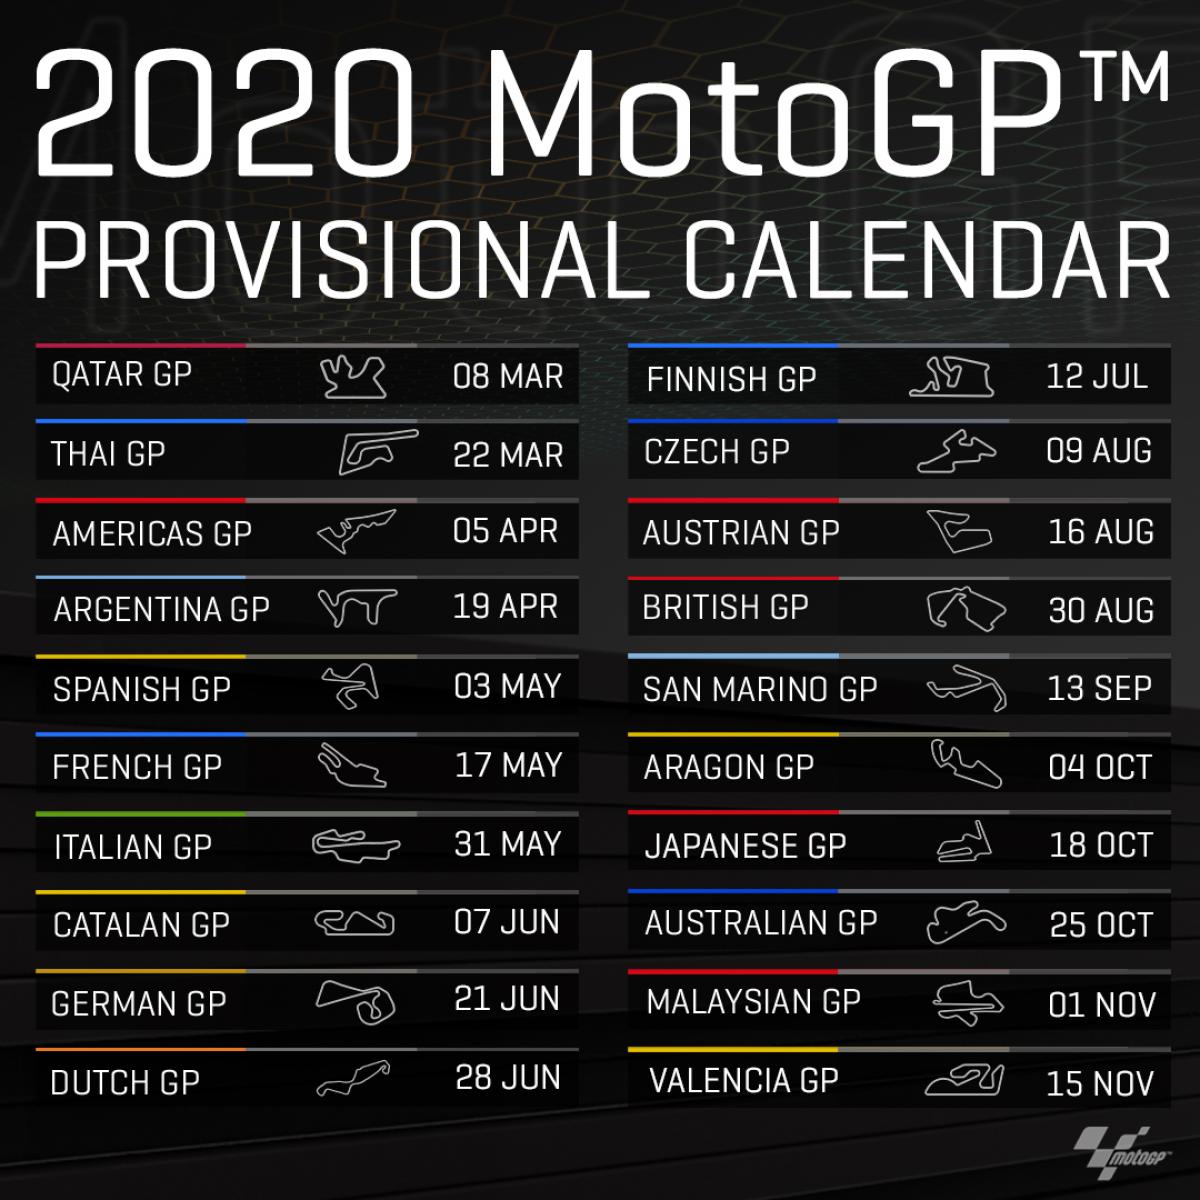 MotoGP Calendário provisório de 2020 é divulgado. Veja as mudanças